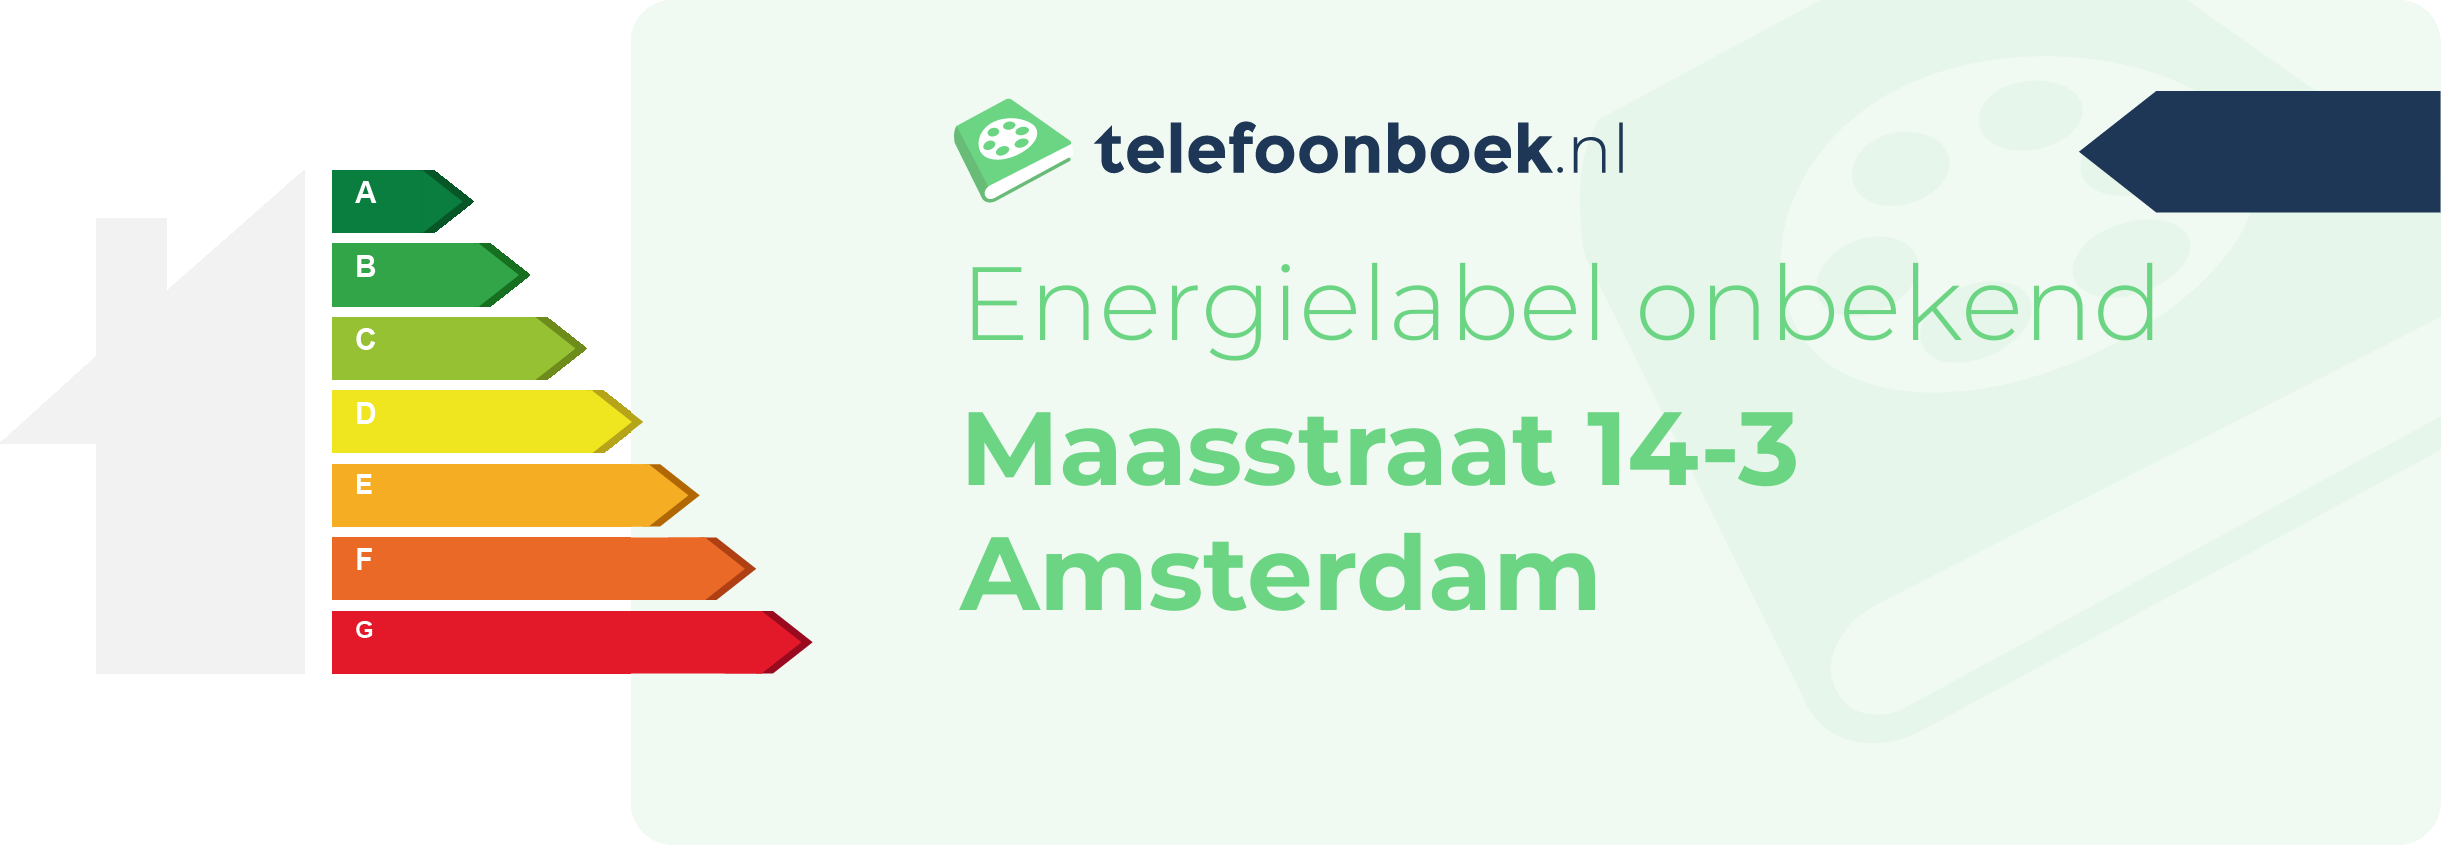 Energielabel Maasstraat 14-3 Amsterdam